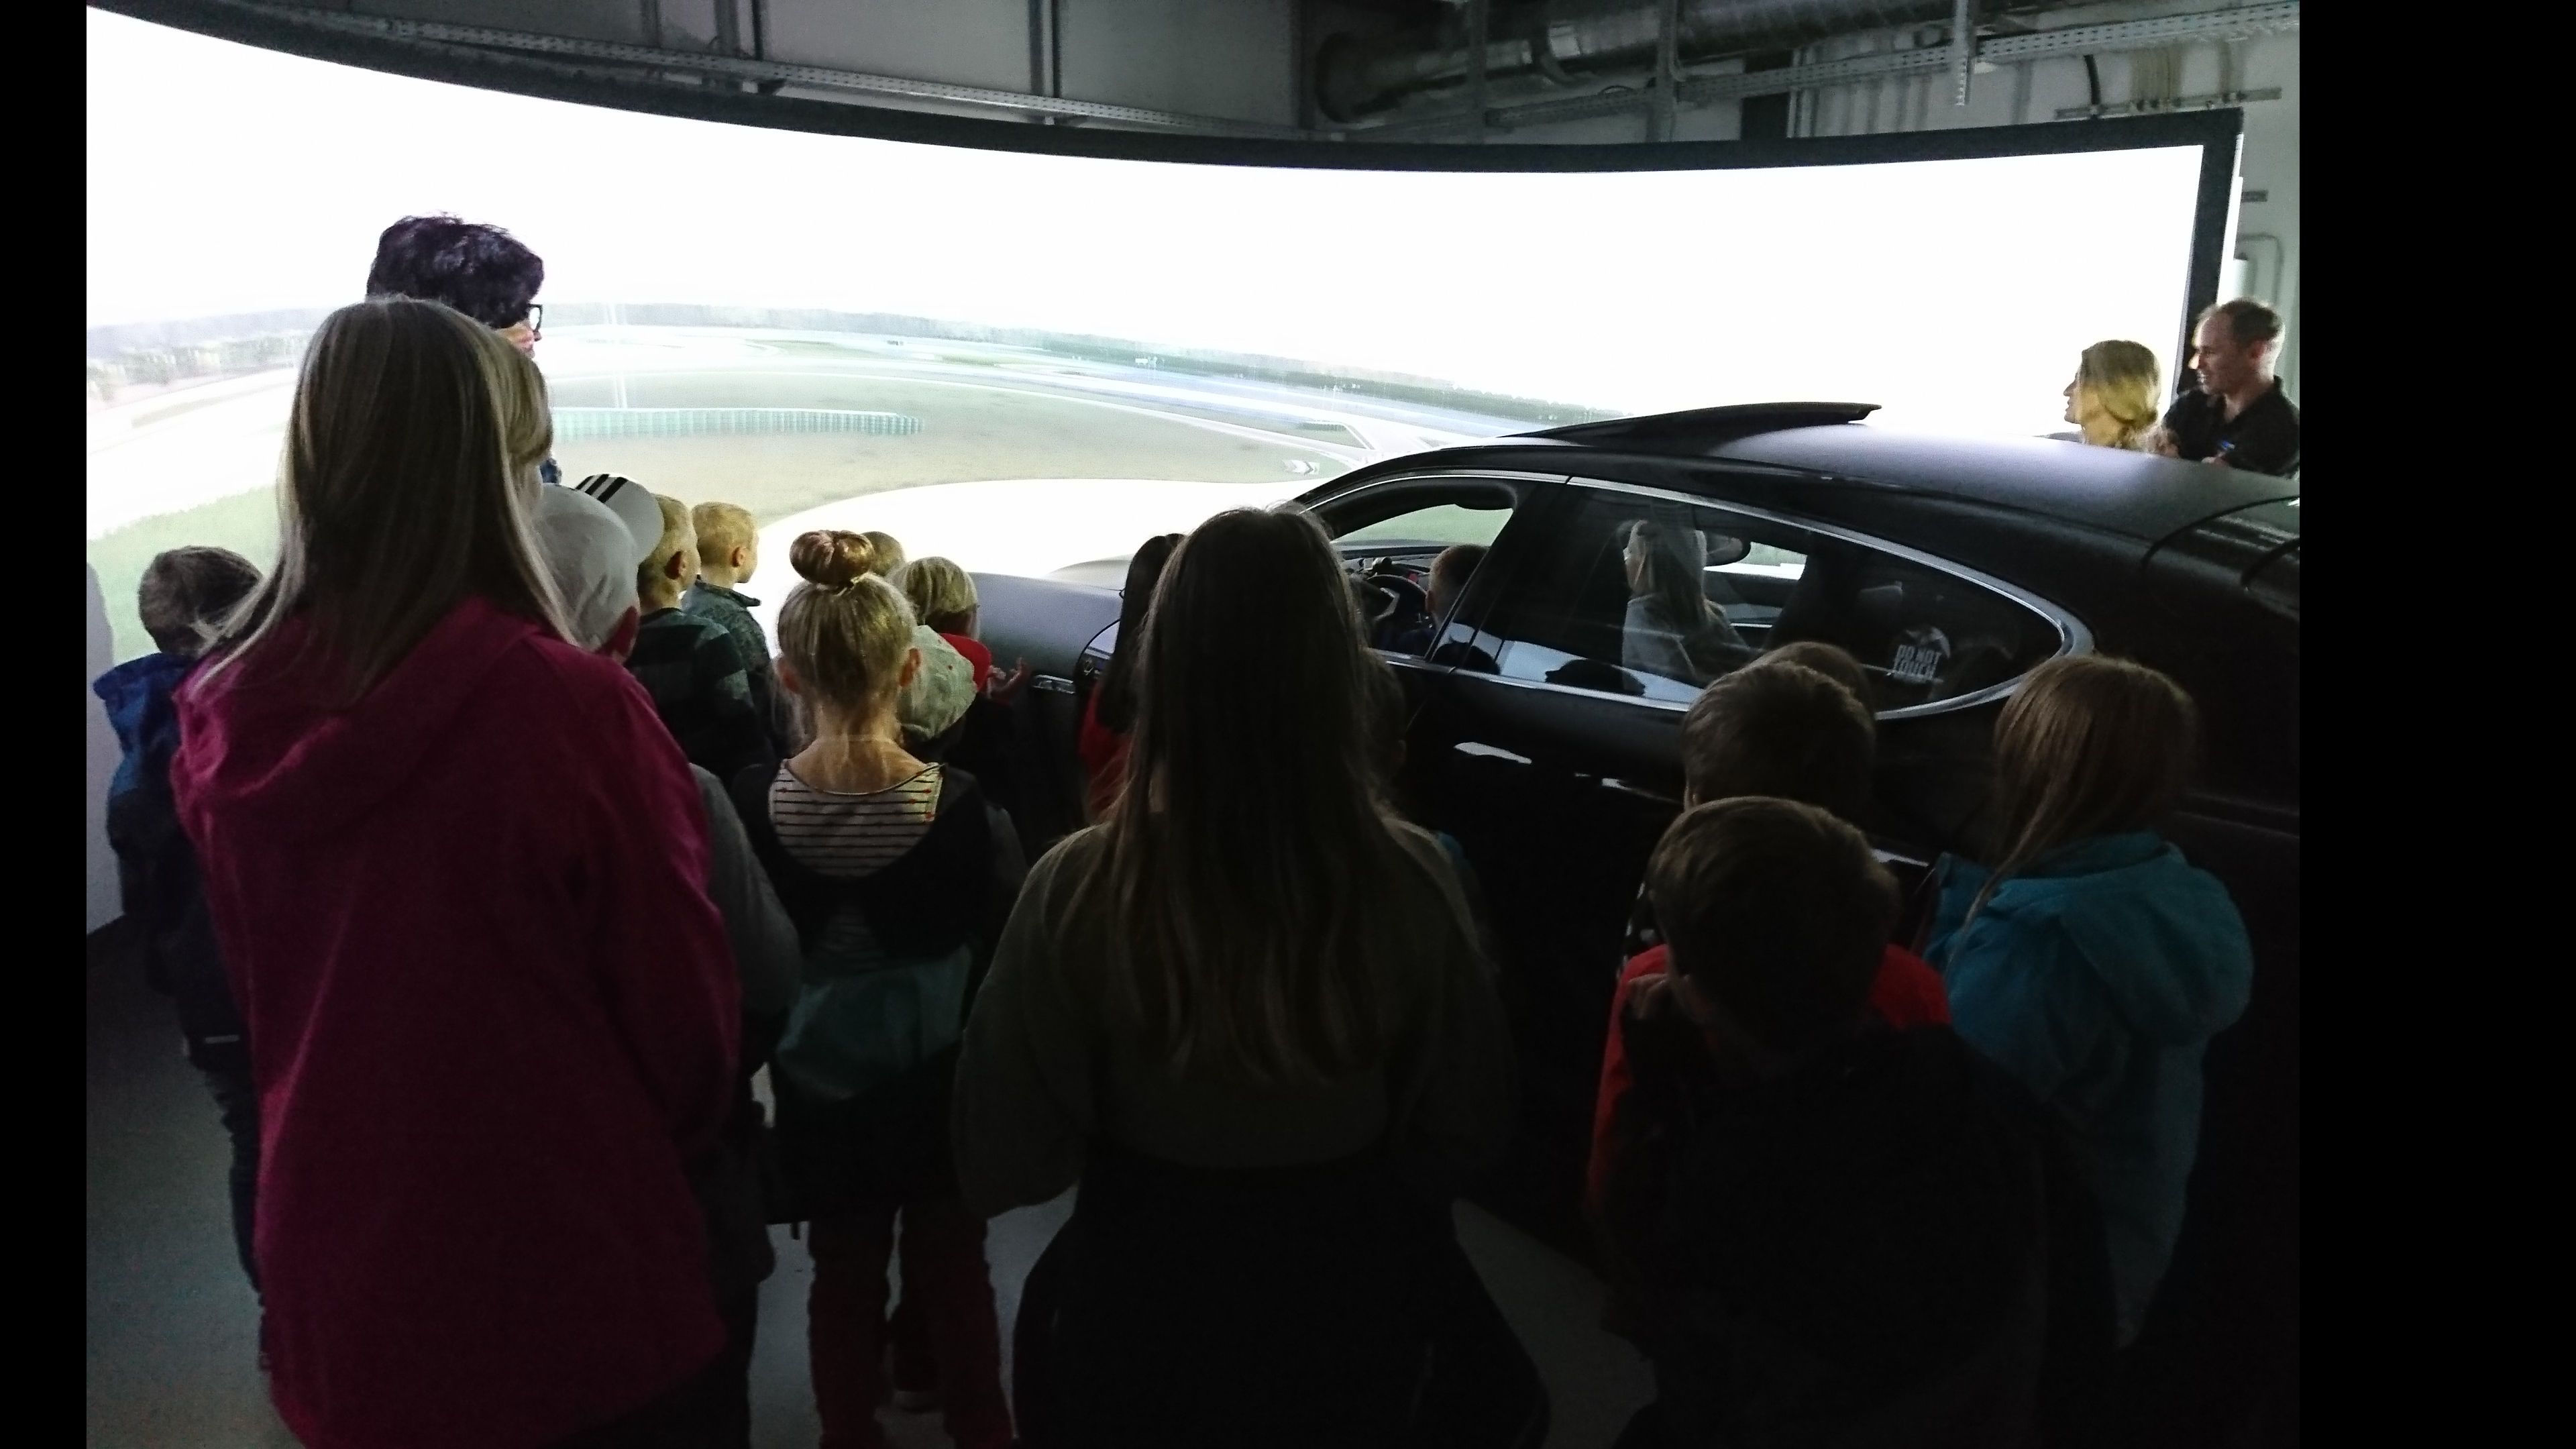 Foto: Besucher stehen im Fahrsimulationslabor um einen PKW mit einer großen Leinwand davor.